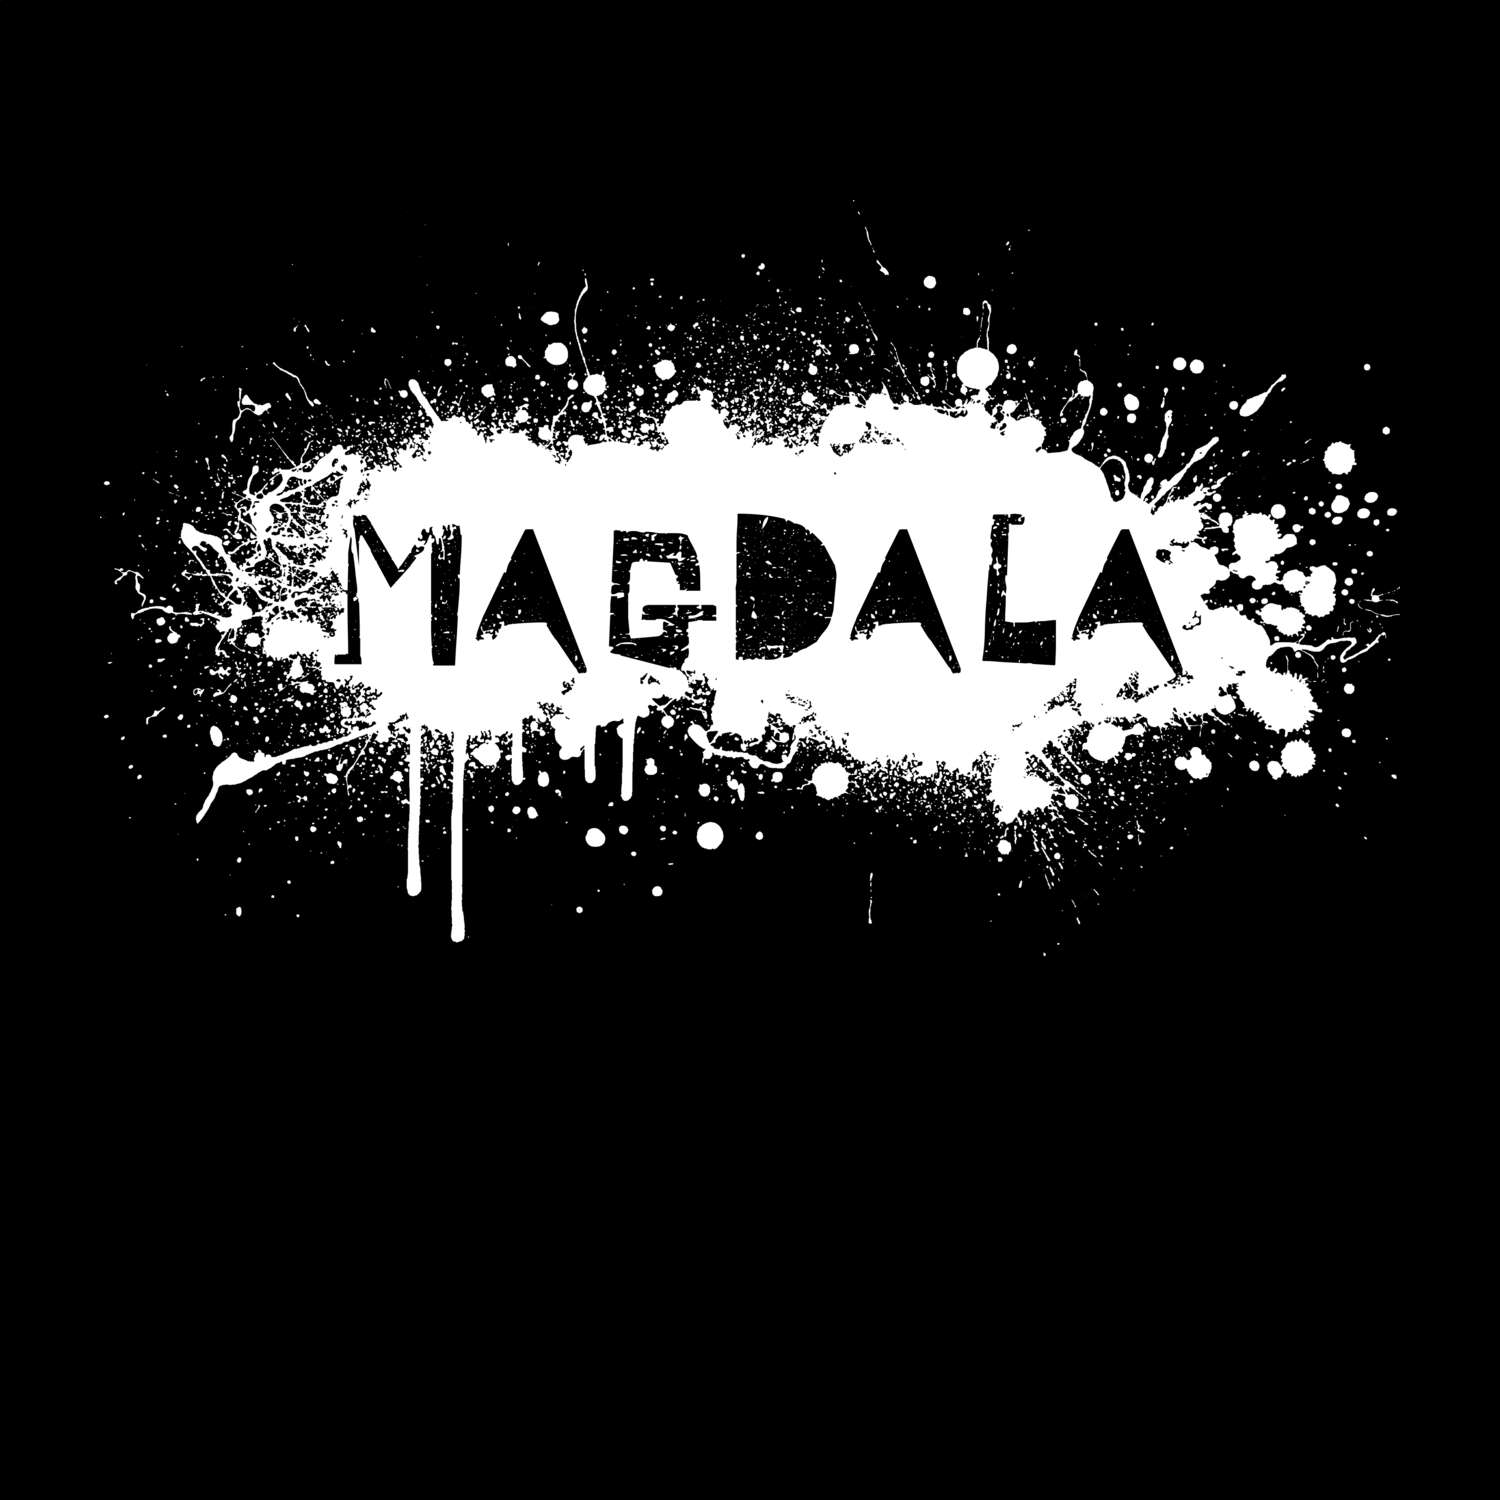 Magdala T-Shirt »Paint Splash Punk«